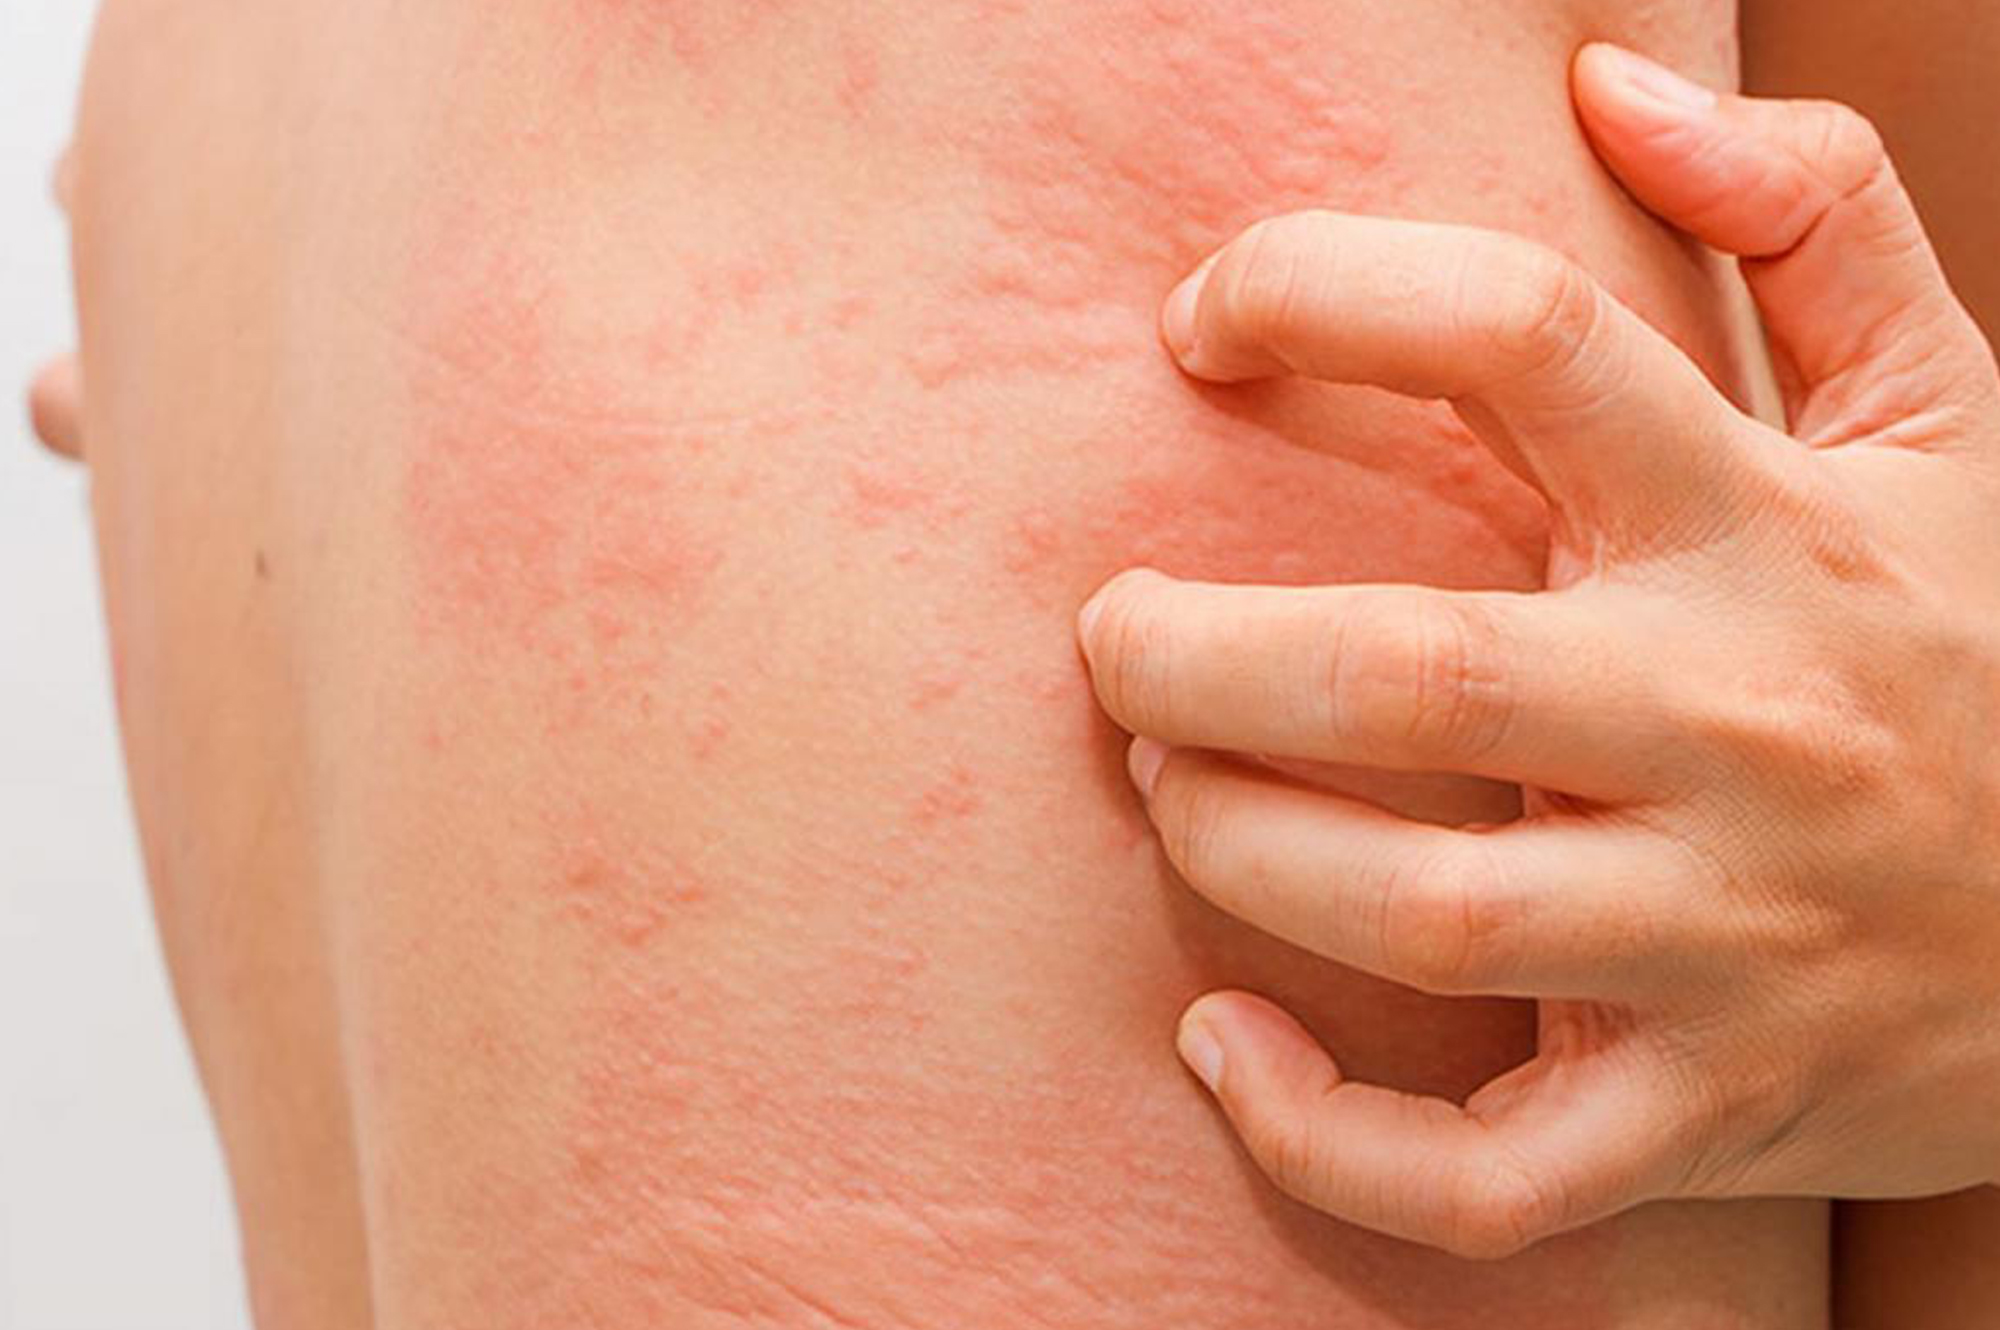 КТ надпочечников - возможные осложнения, аллергия